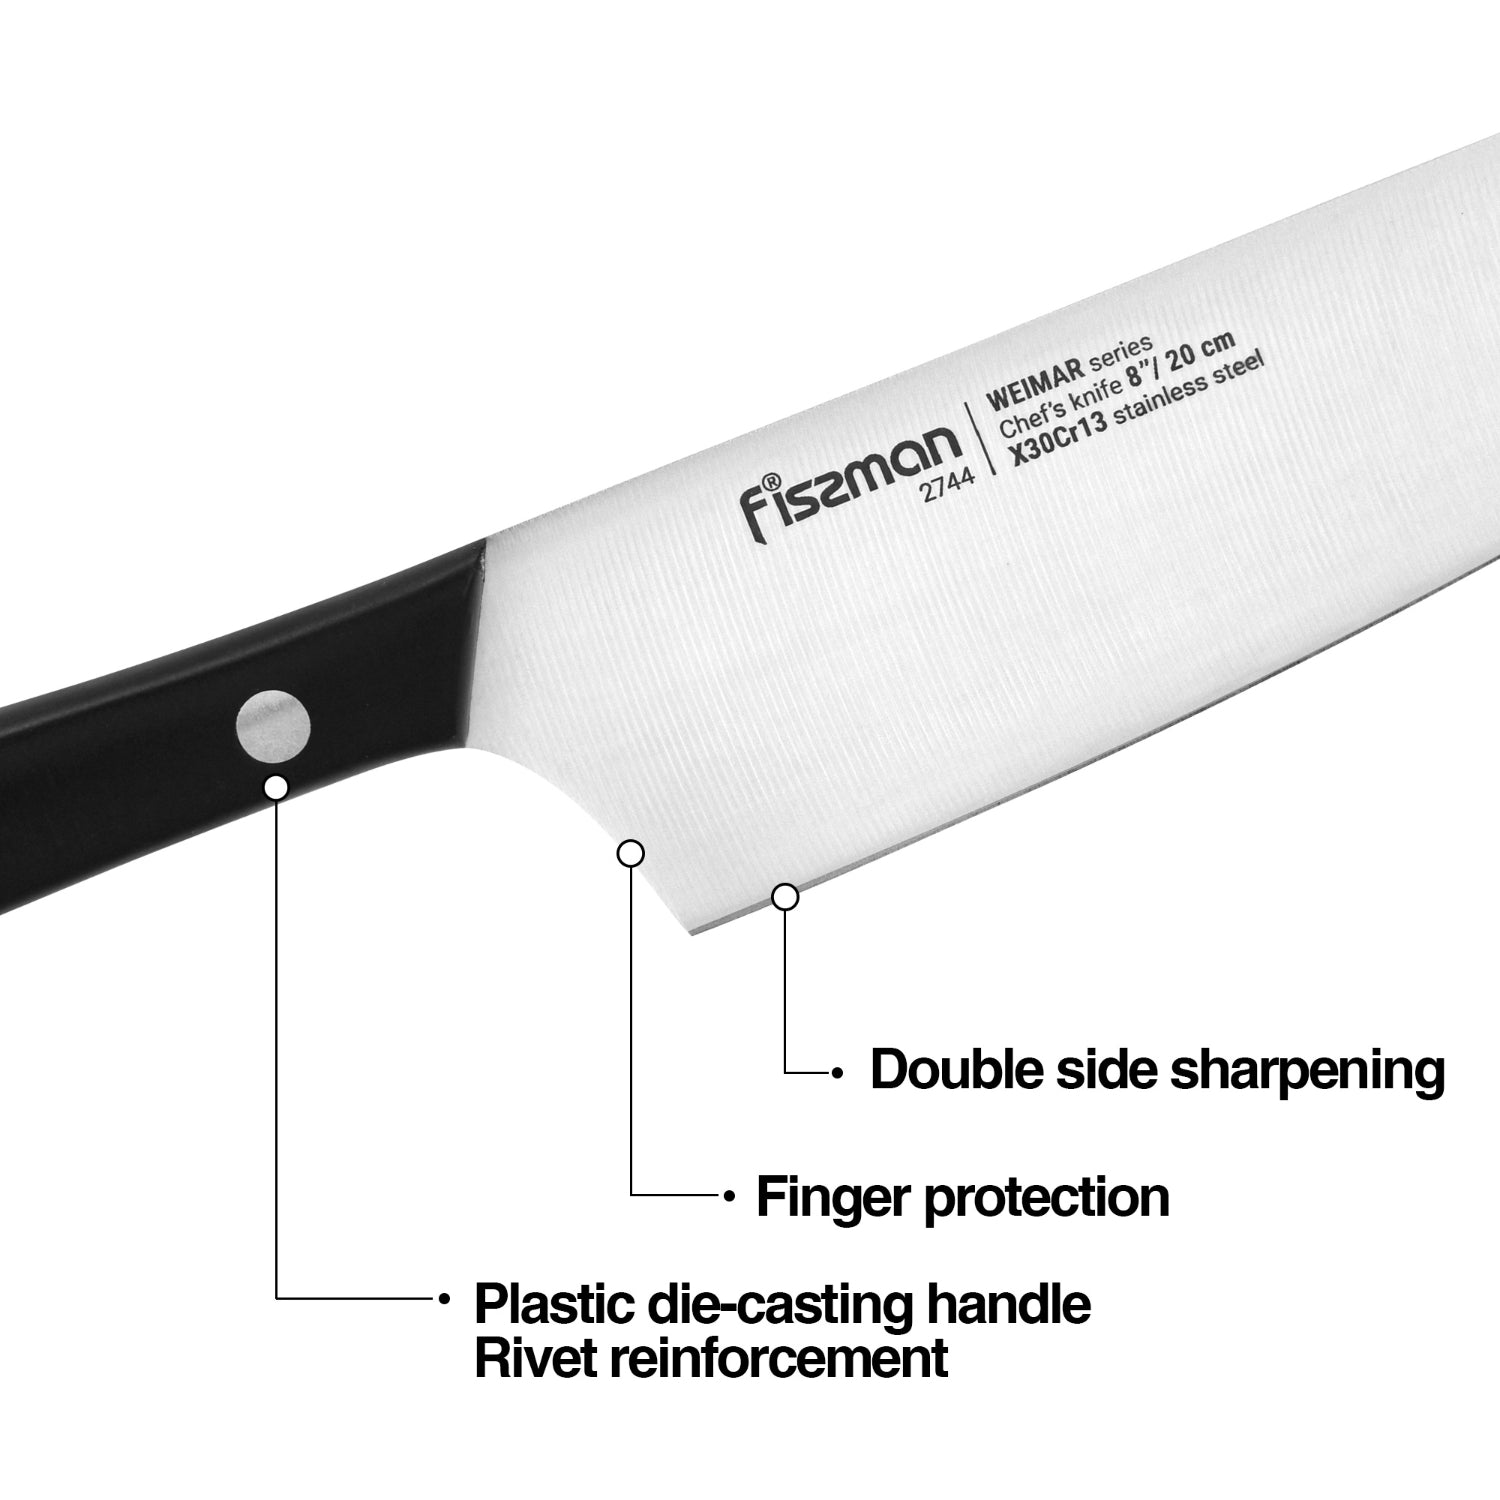 فيسمان 7 قطعة سكين مجموعة فايمار مع كتلة خشبية مع المدمج في مبراة X30Cr13 الصلب